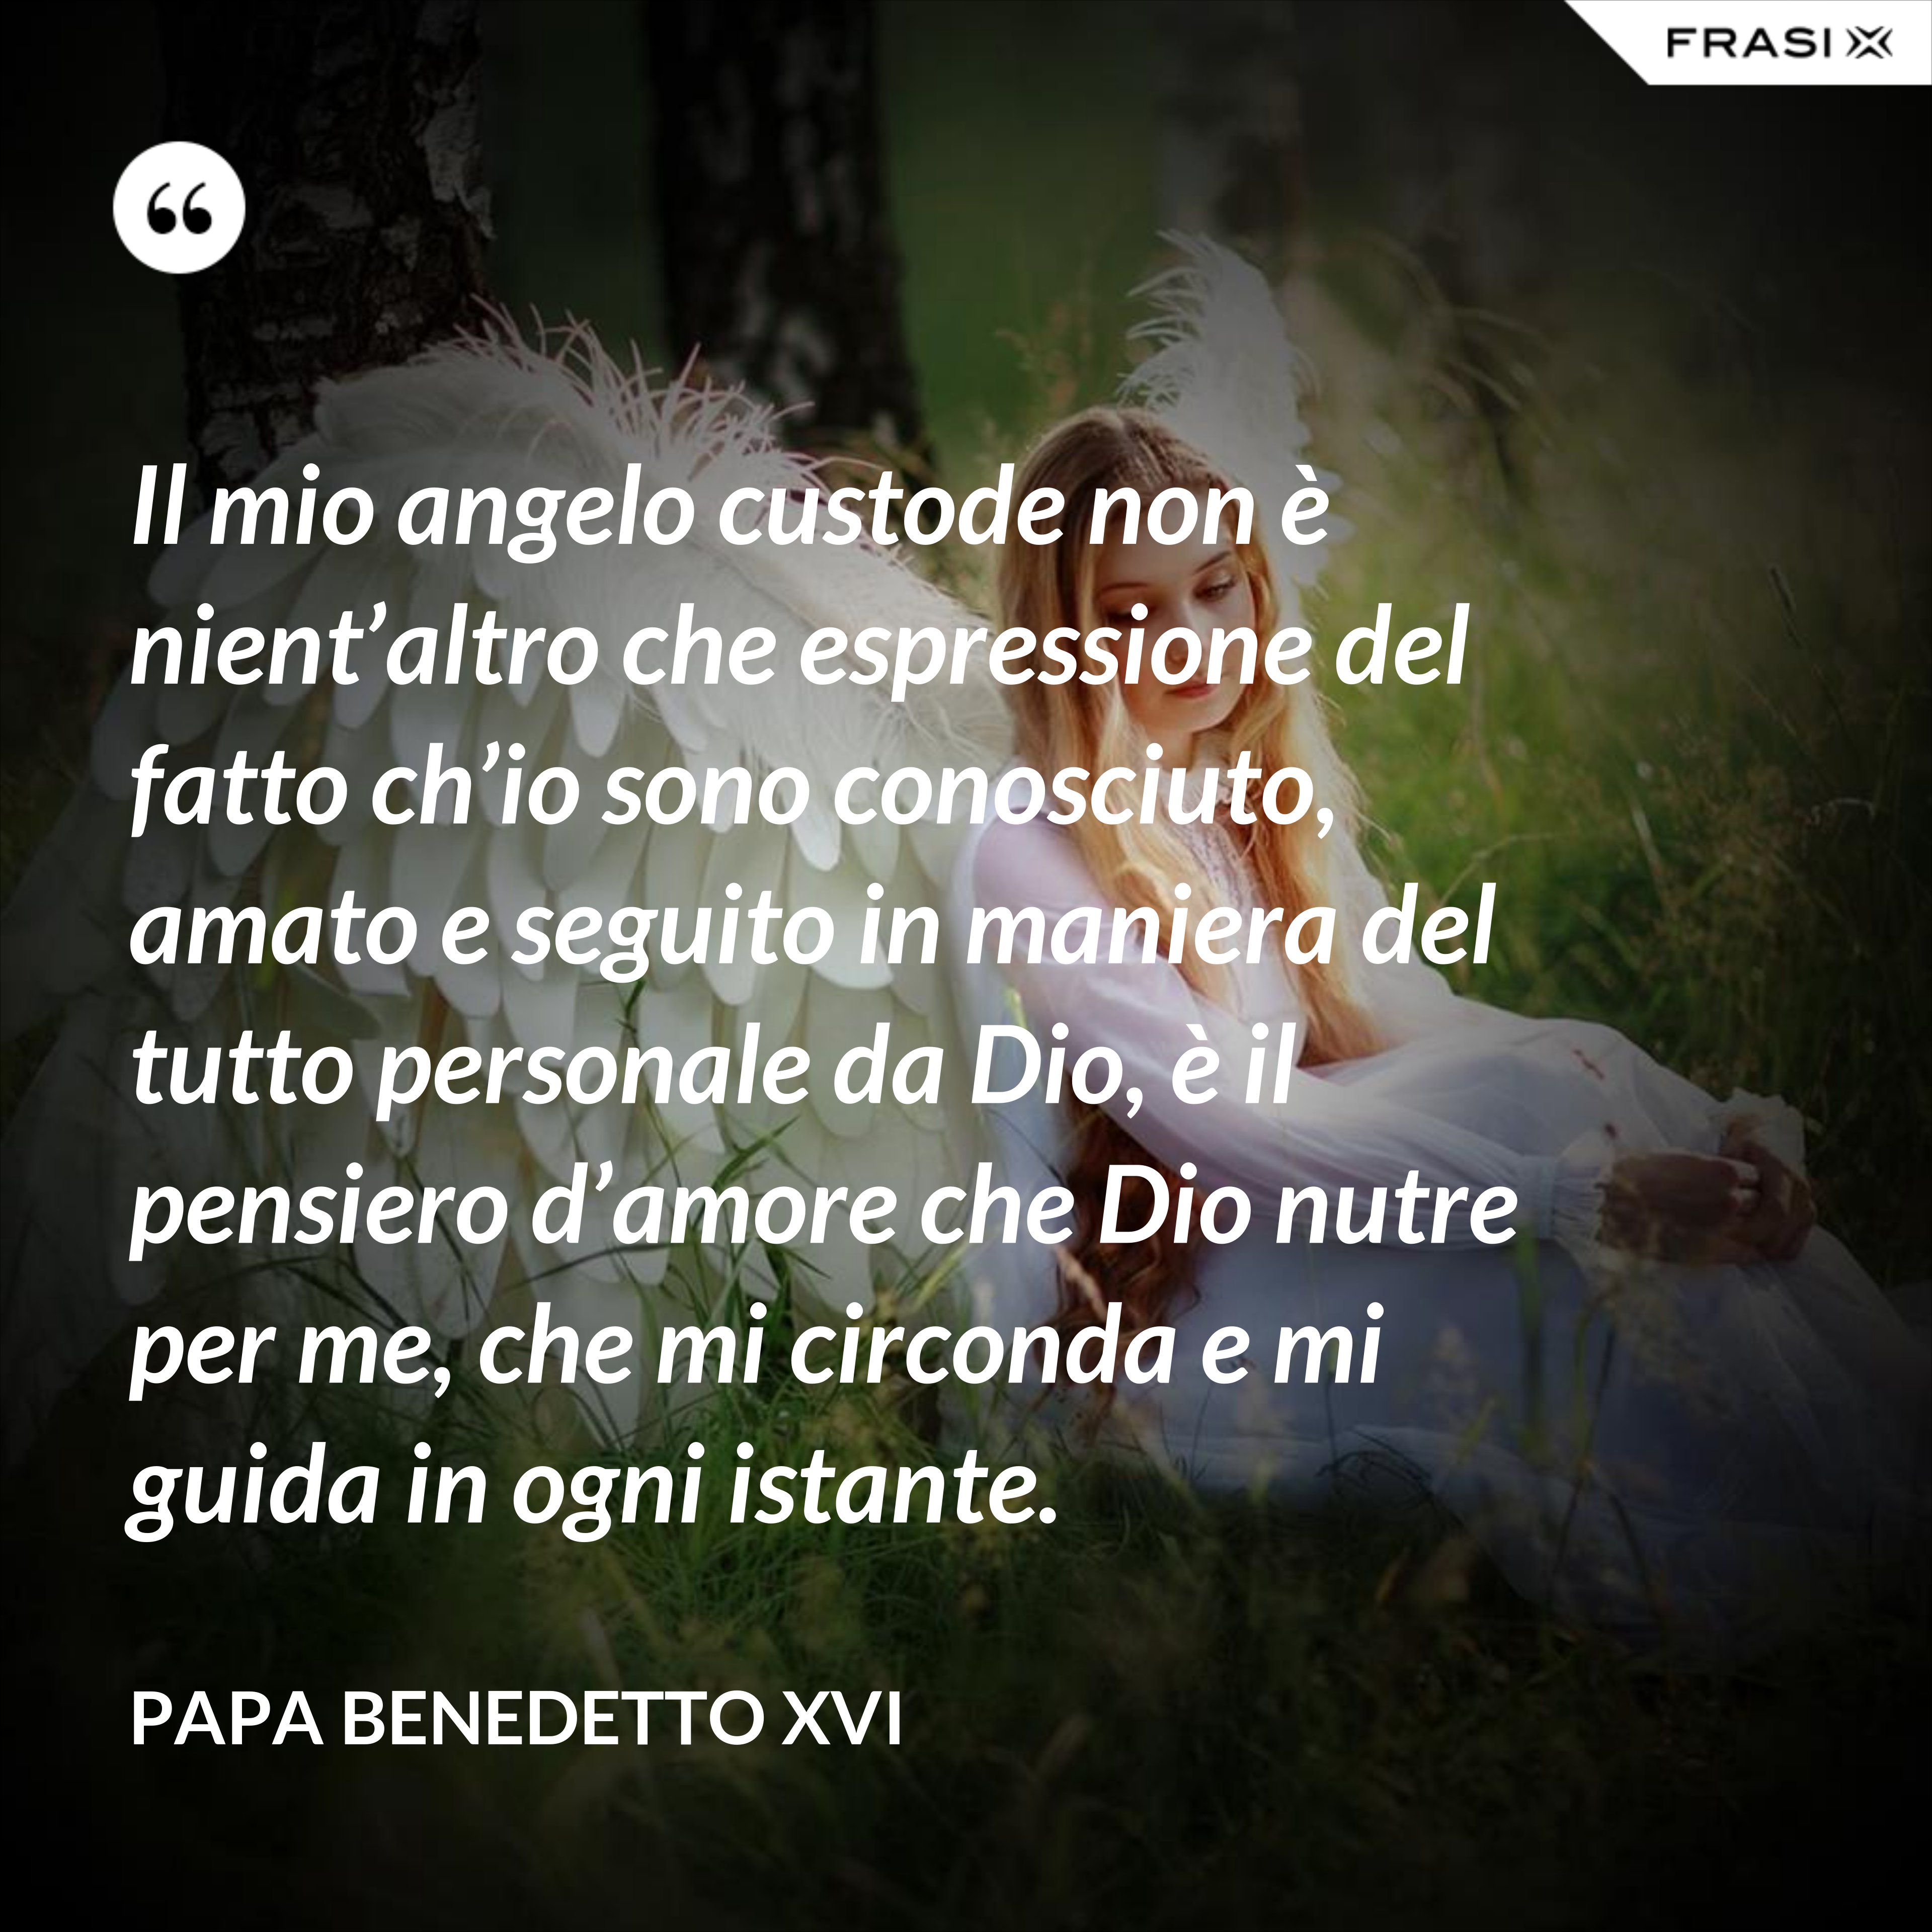 Il mio angelo custode non è nient’altro che espressione del fatto ch’io sono conosciuto, amato e seguito in maniera del tutto personale da Dio, è il pensiero d’amore che Dio nutre per me, che mi circonda e mi guida in ogni istante. - Papa Benedetto XVI